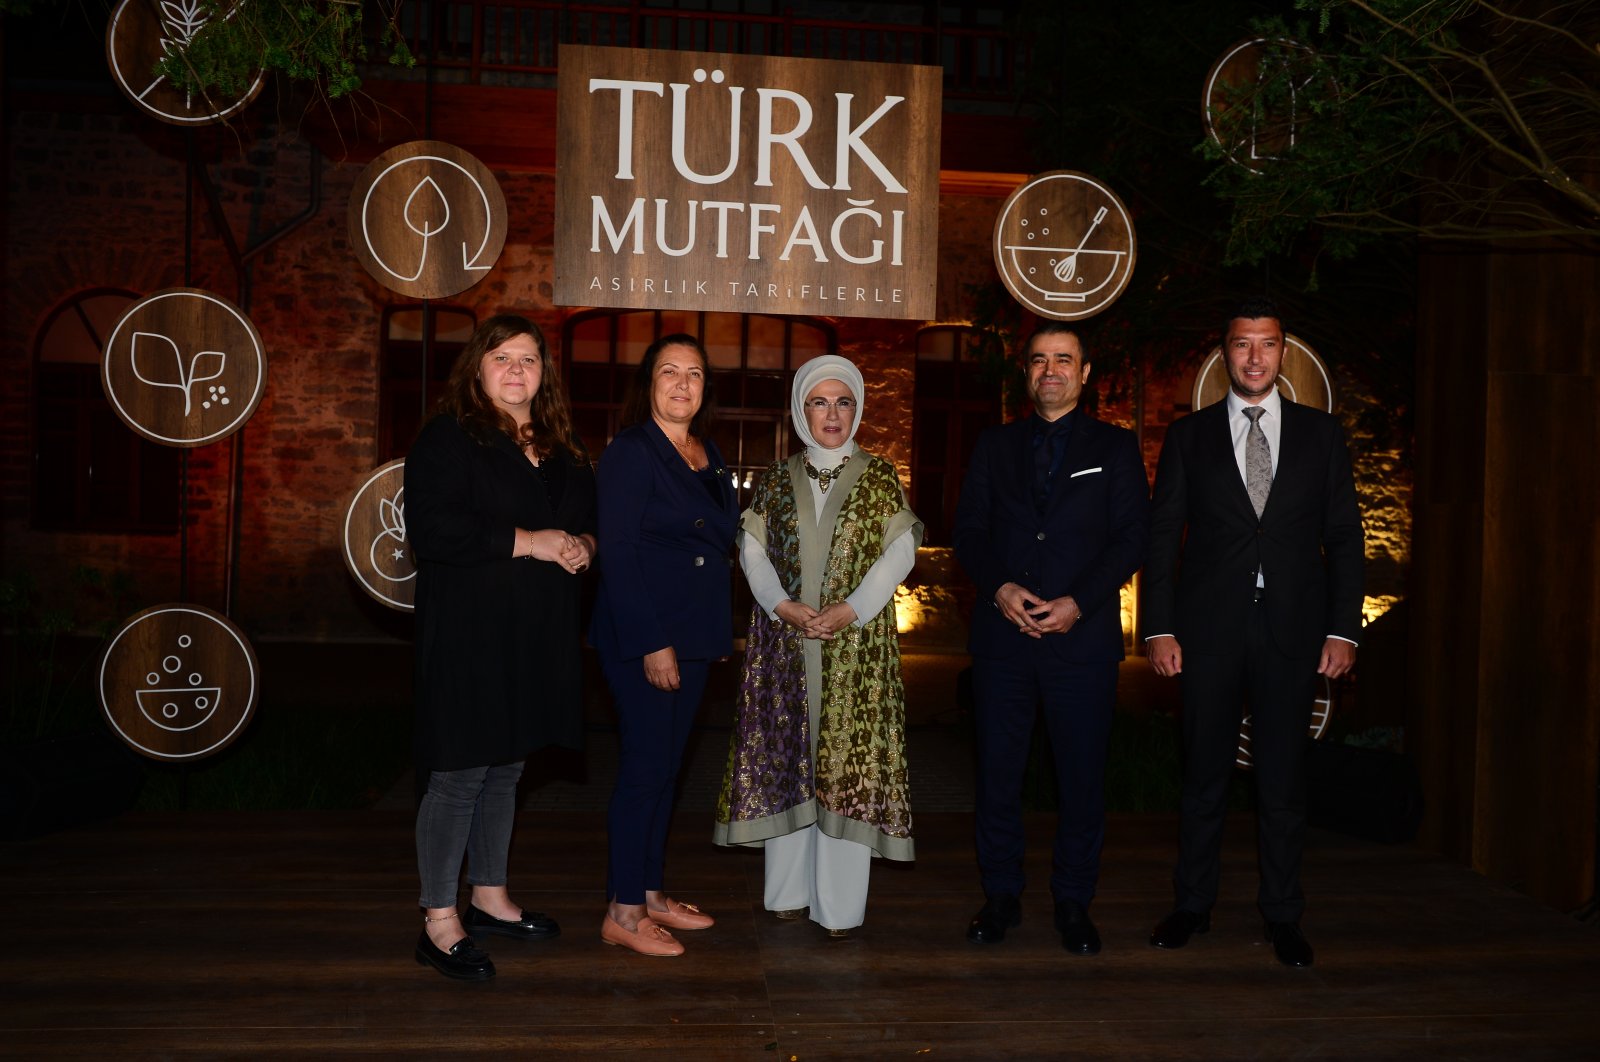 Buku ibu negara tentang masakan Turki dinominasikan untuk 2 penghargaan